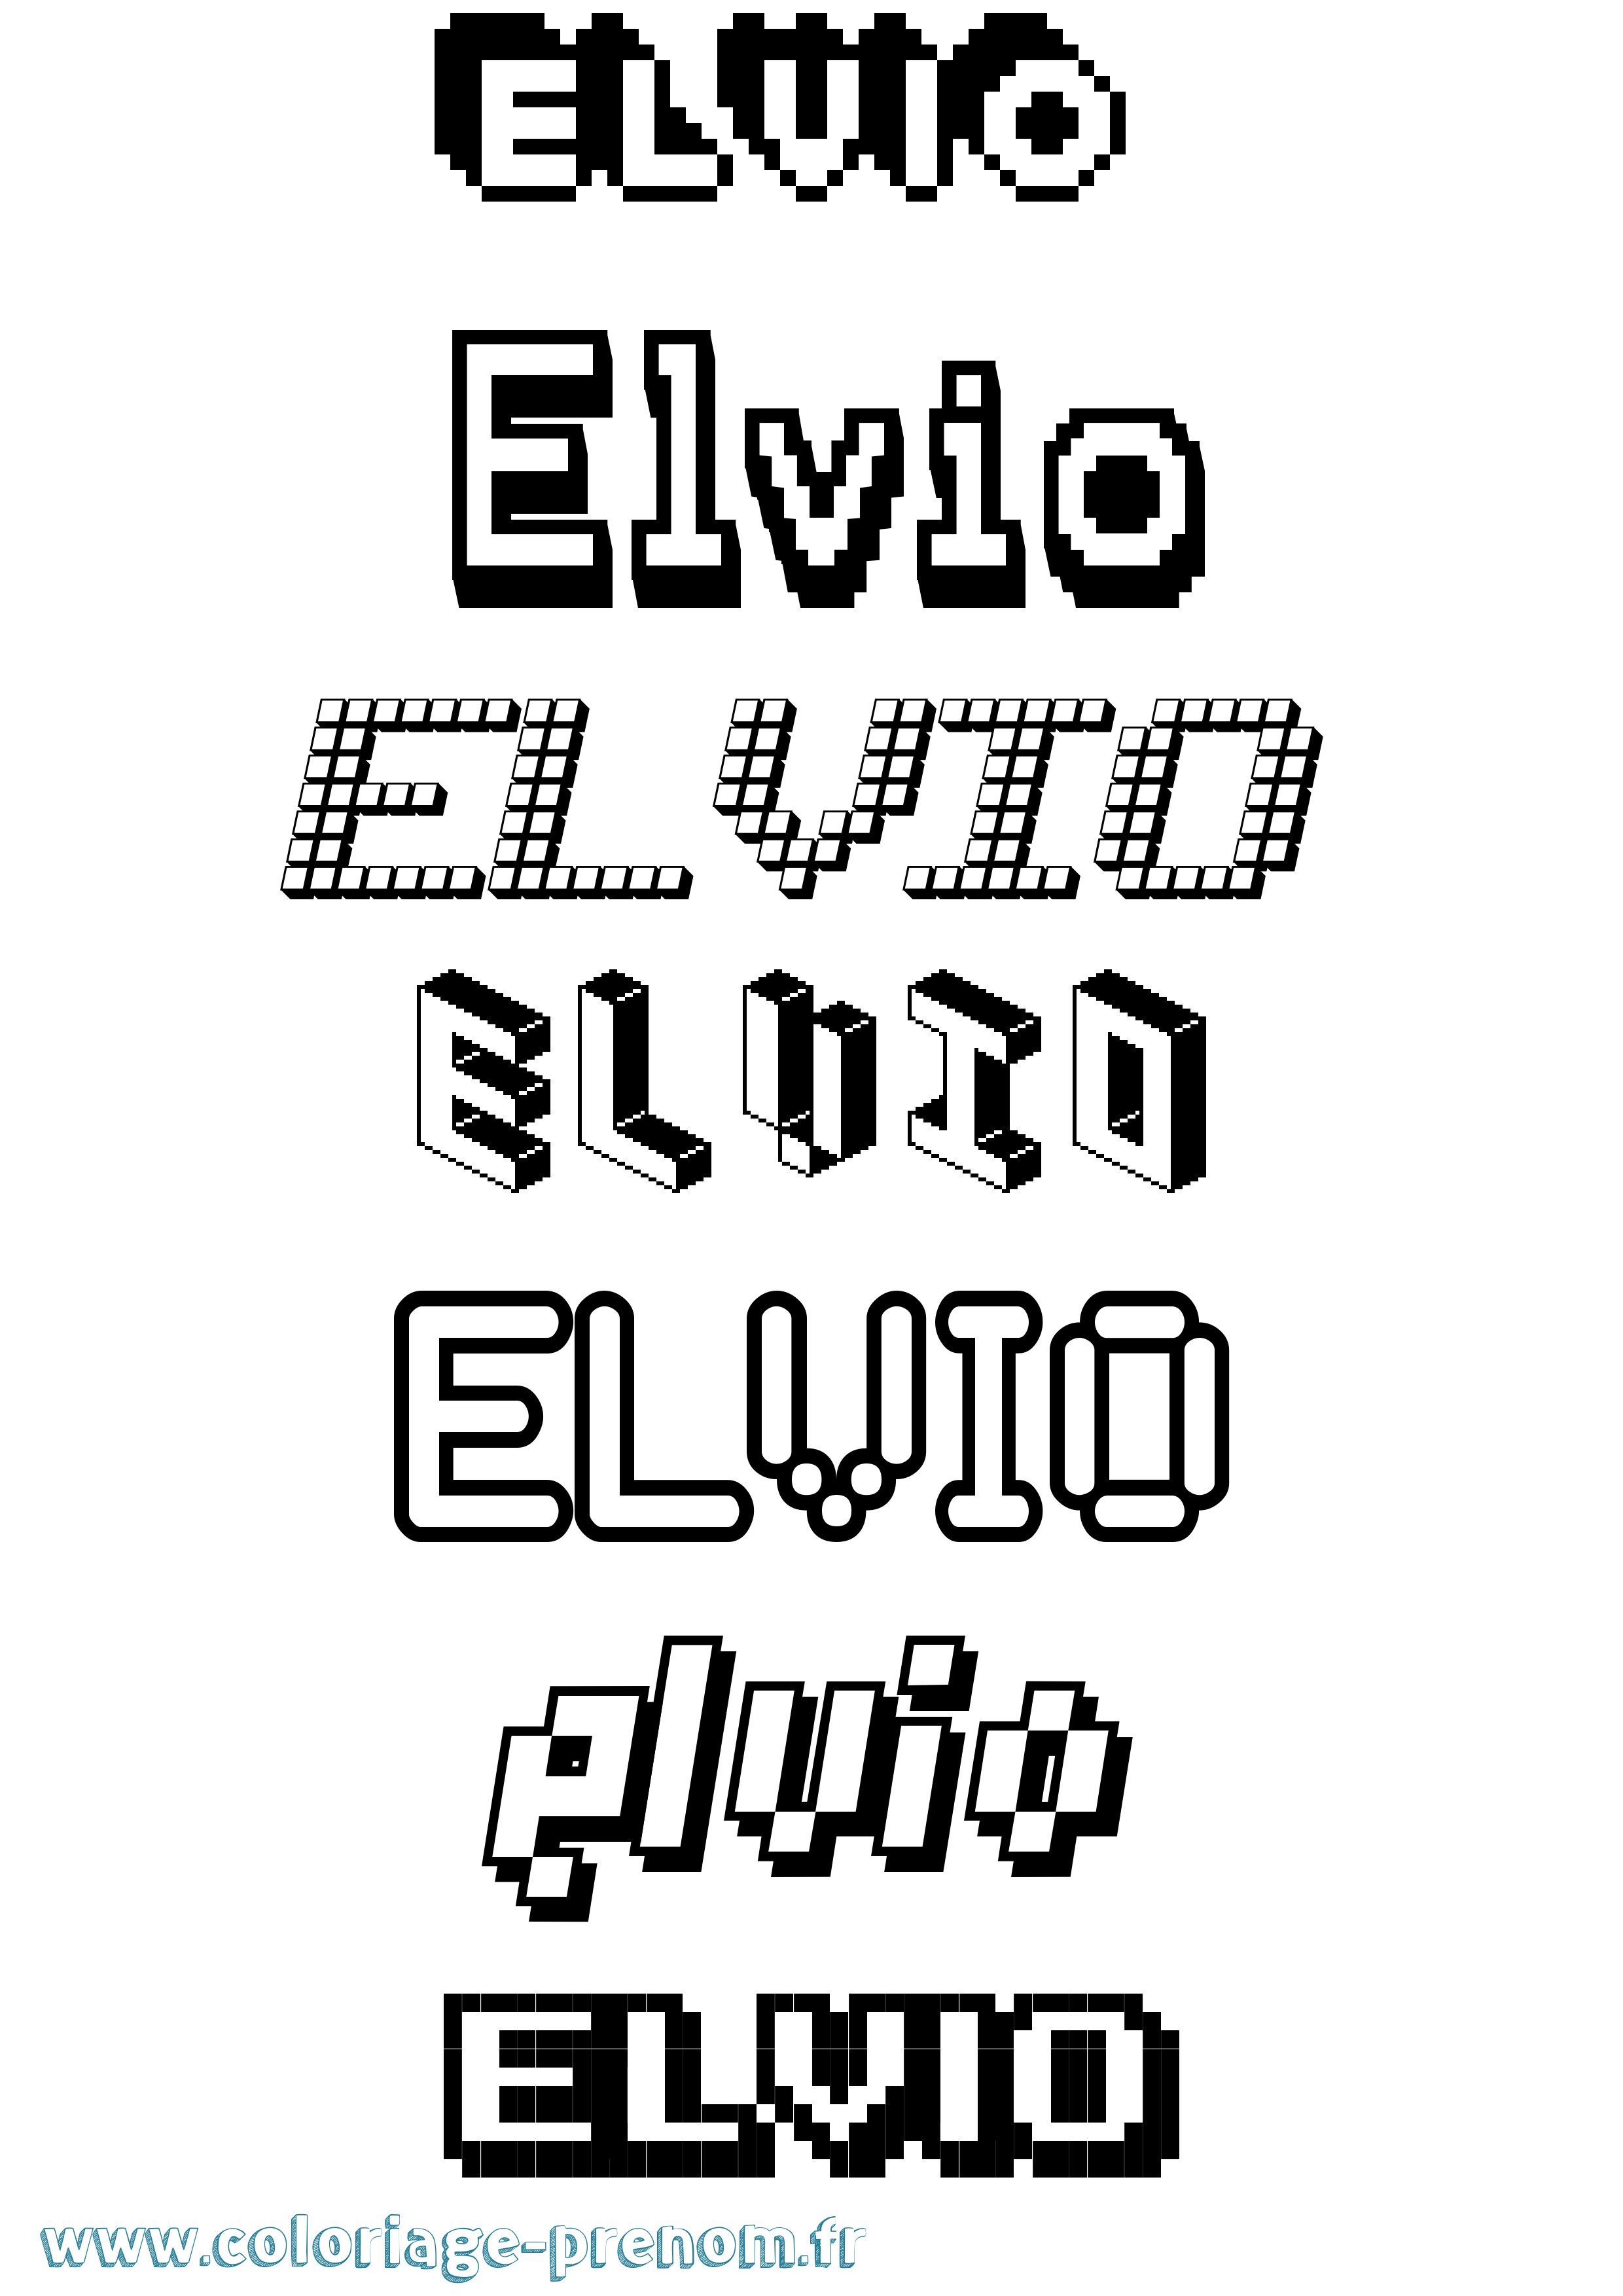 Coloriage prénom Elvio Pixel